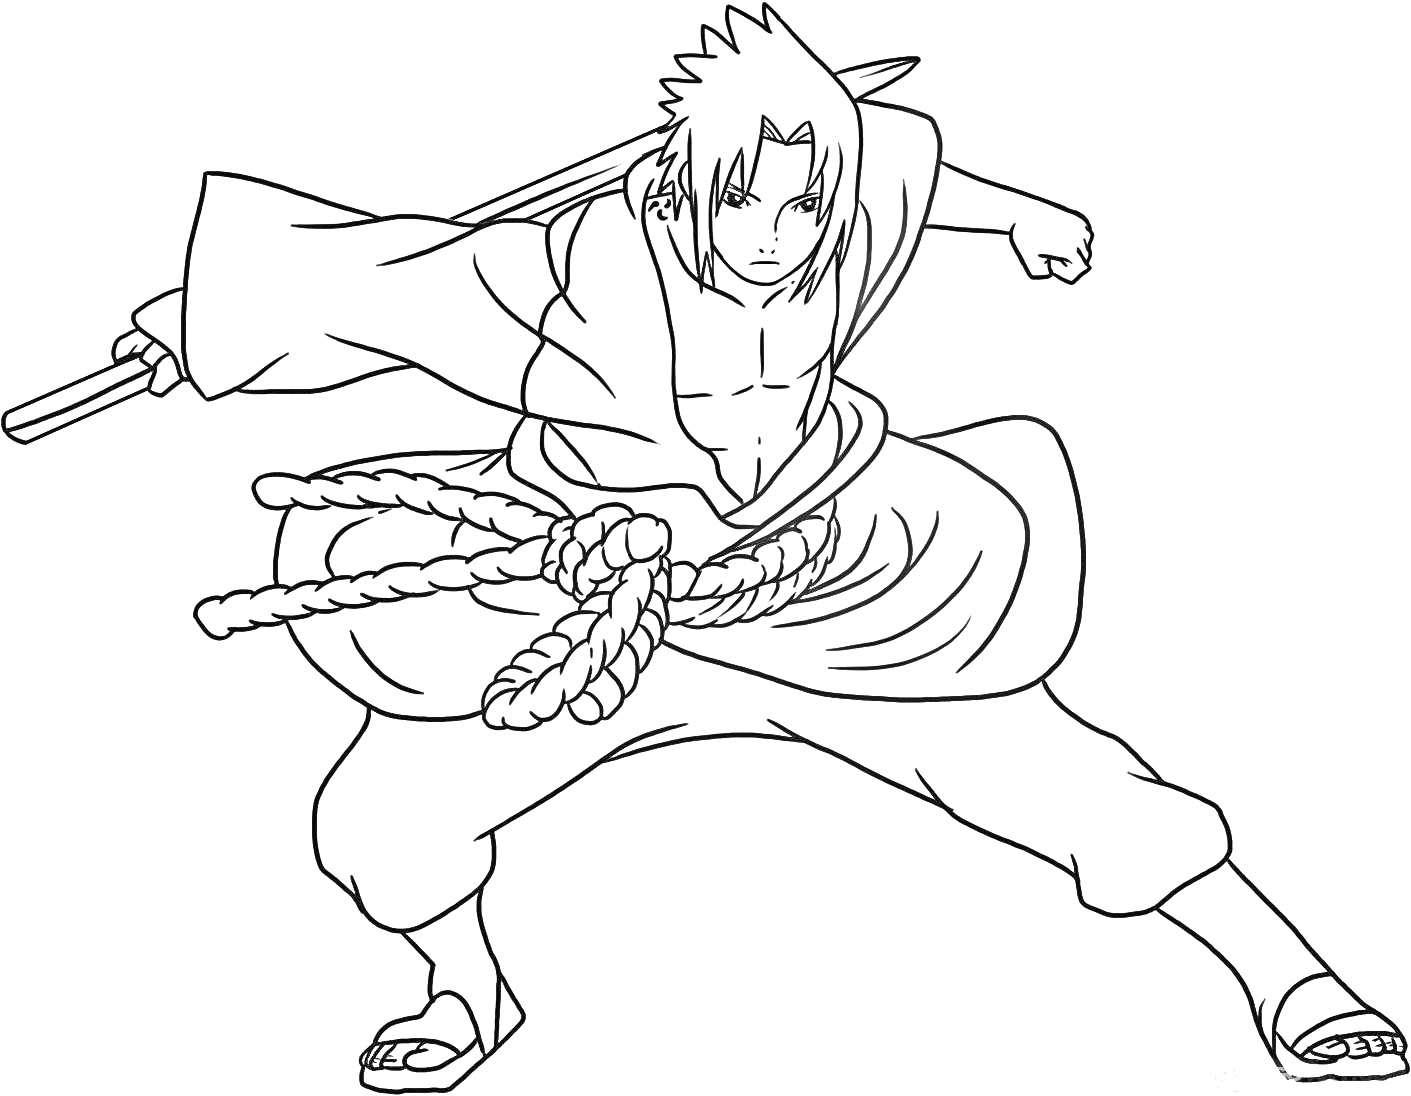 Раскраска Воин из Наруто в атакующей позе с мечом за спиной